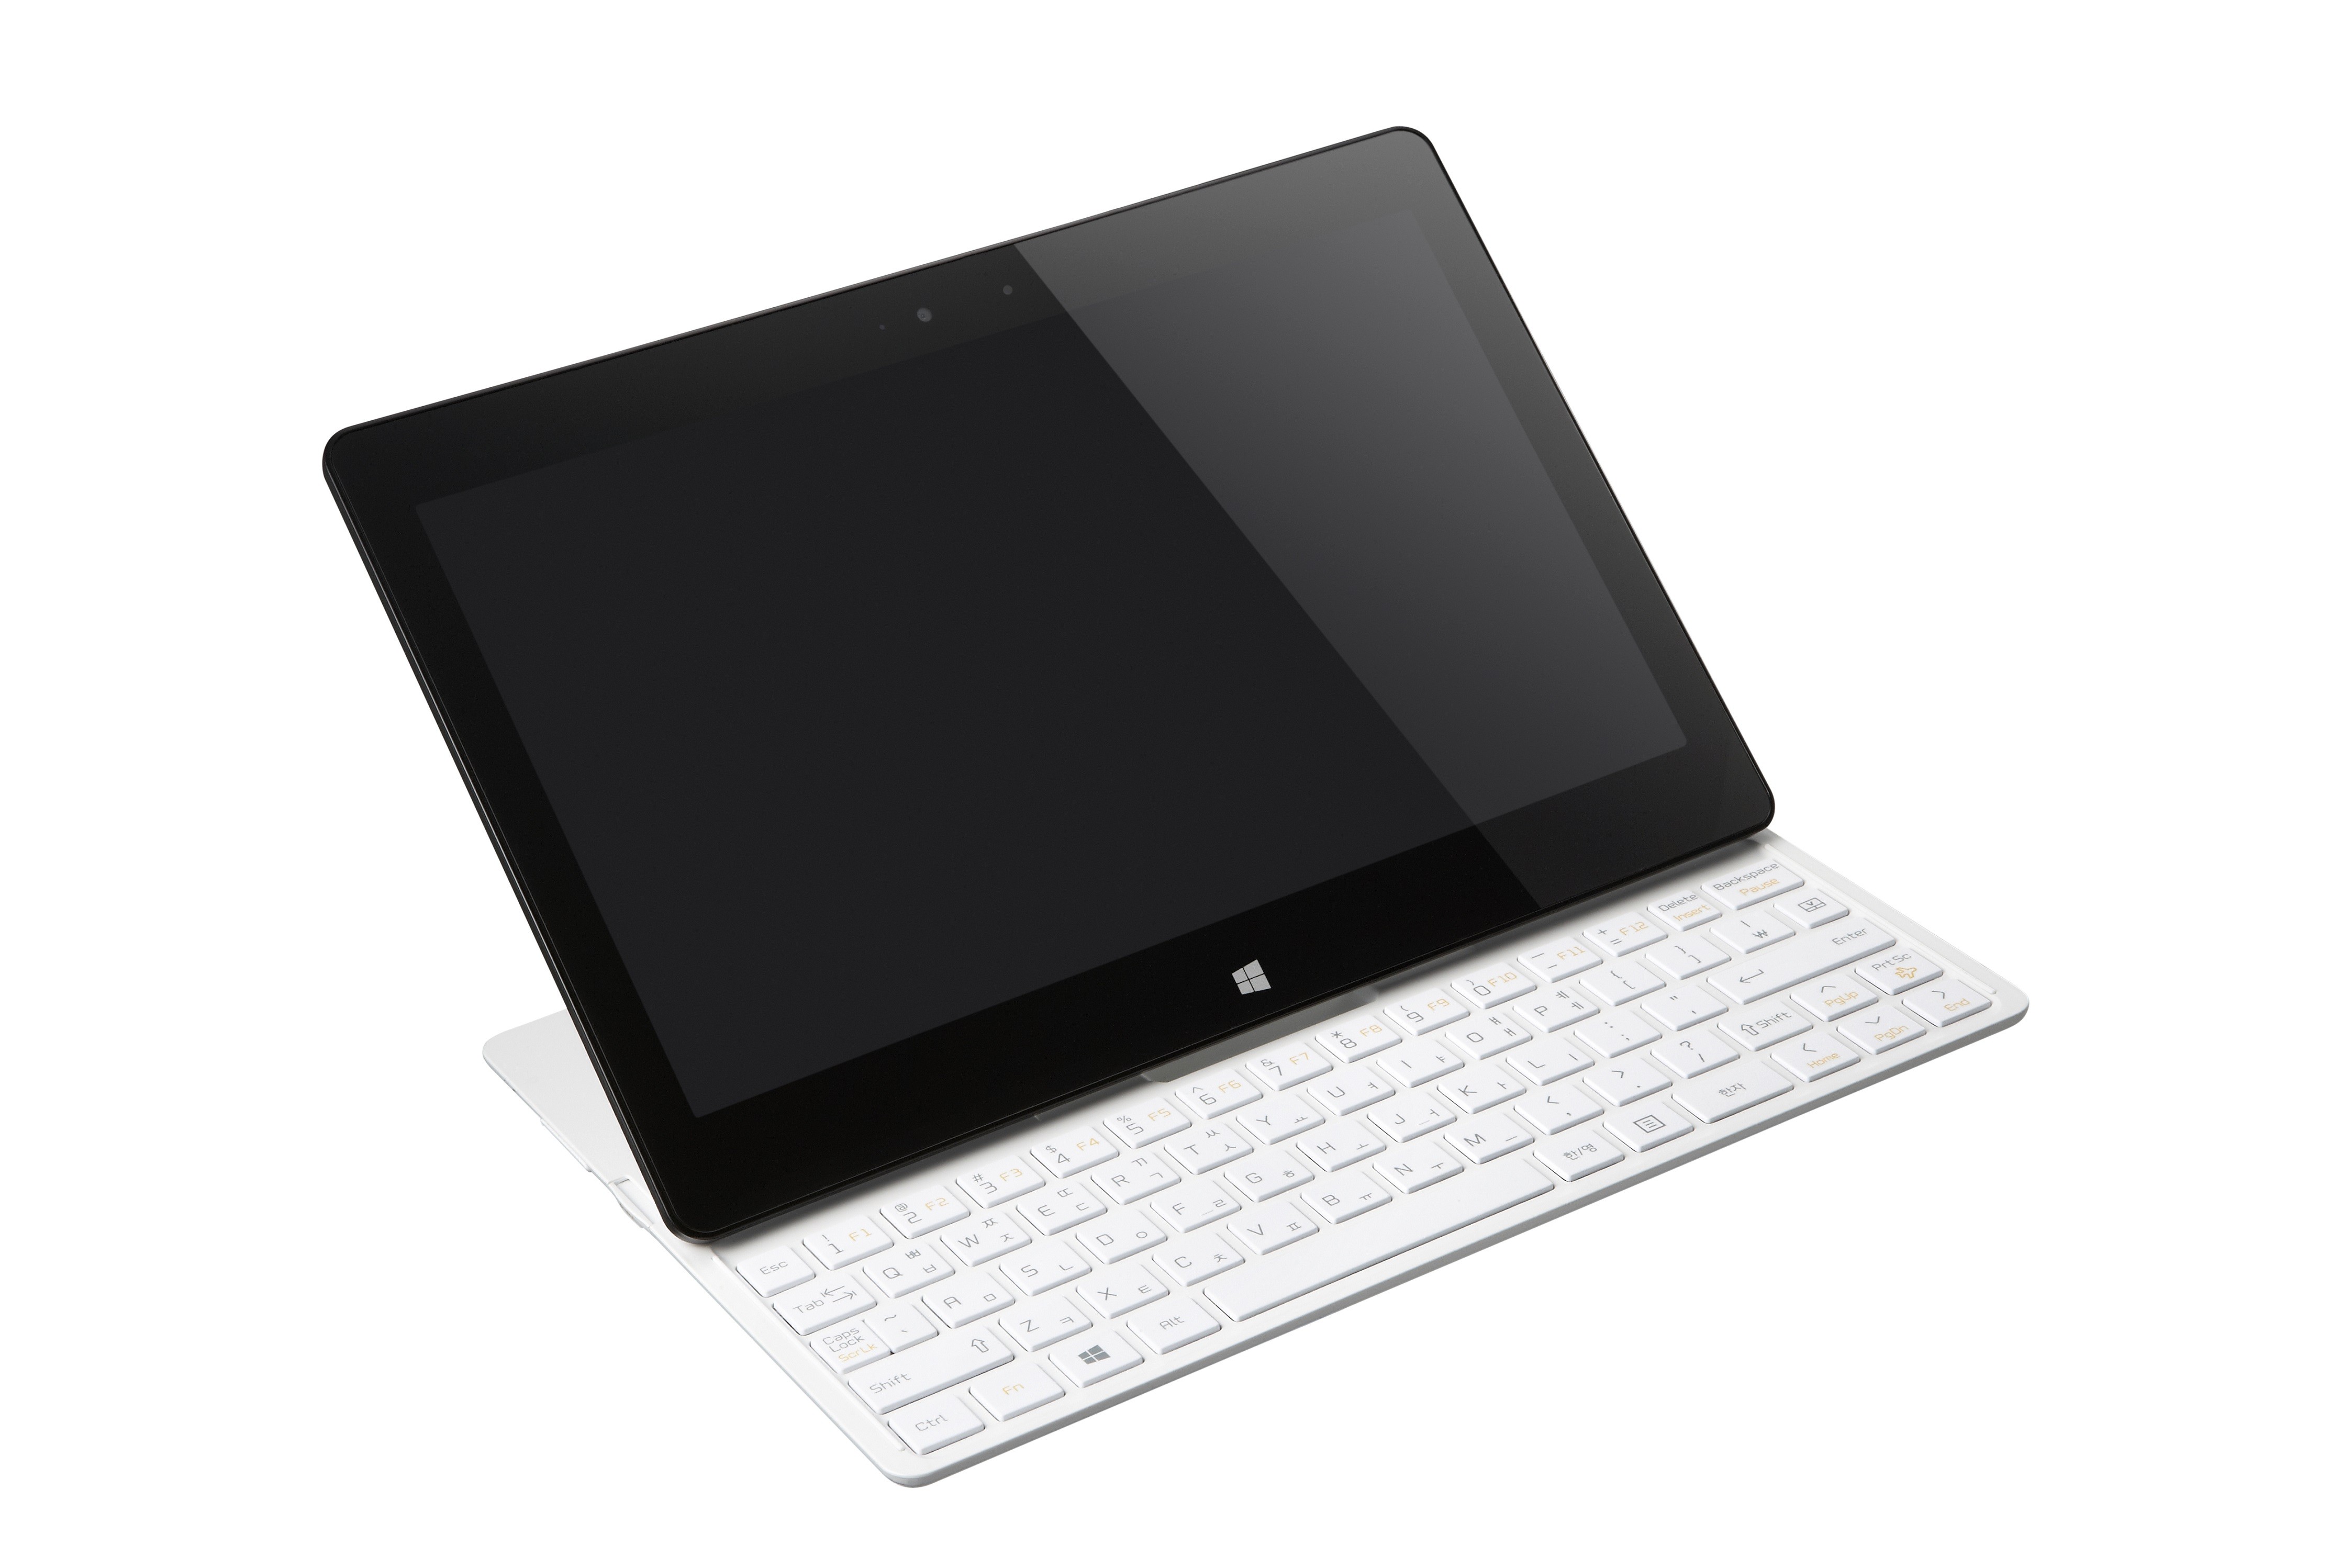 LG'den yeni ultrabook ve dönüşebilen tablet!